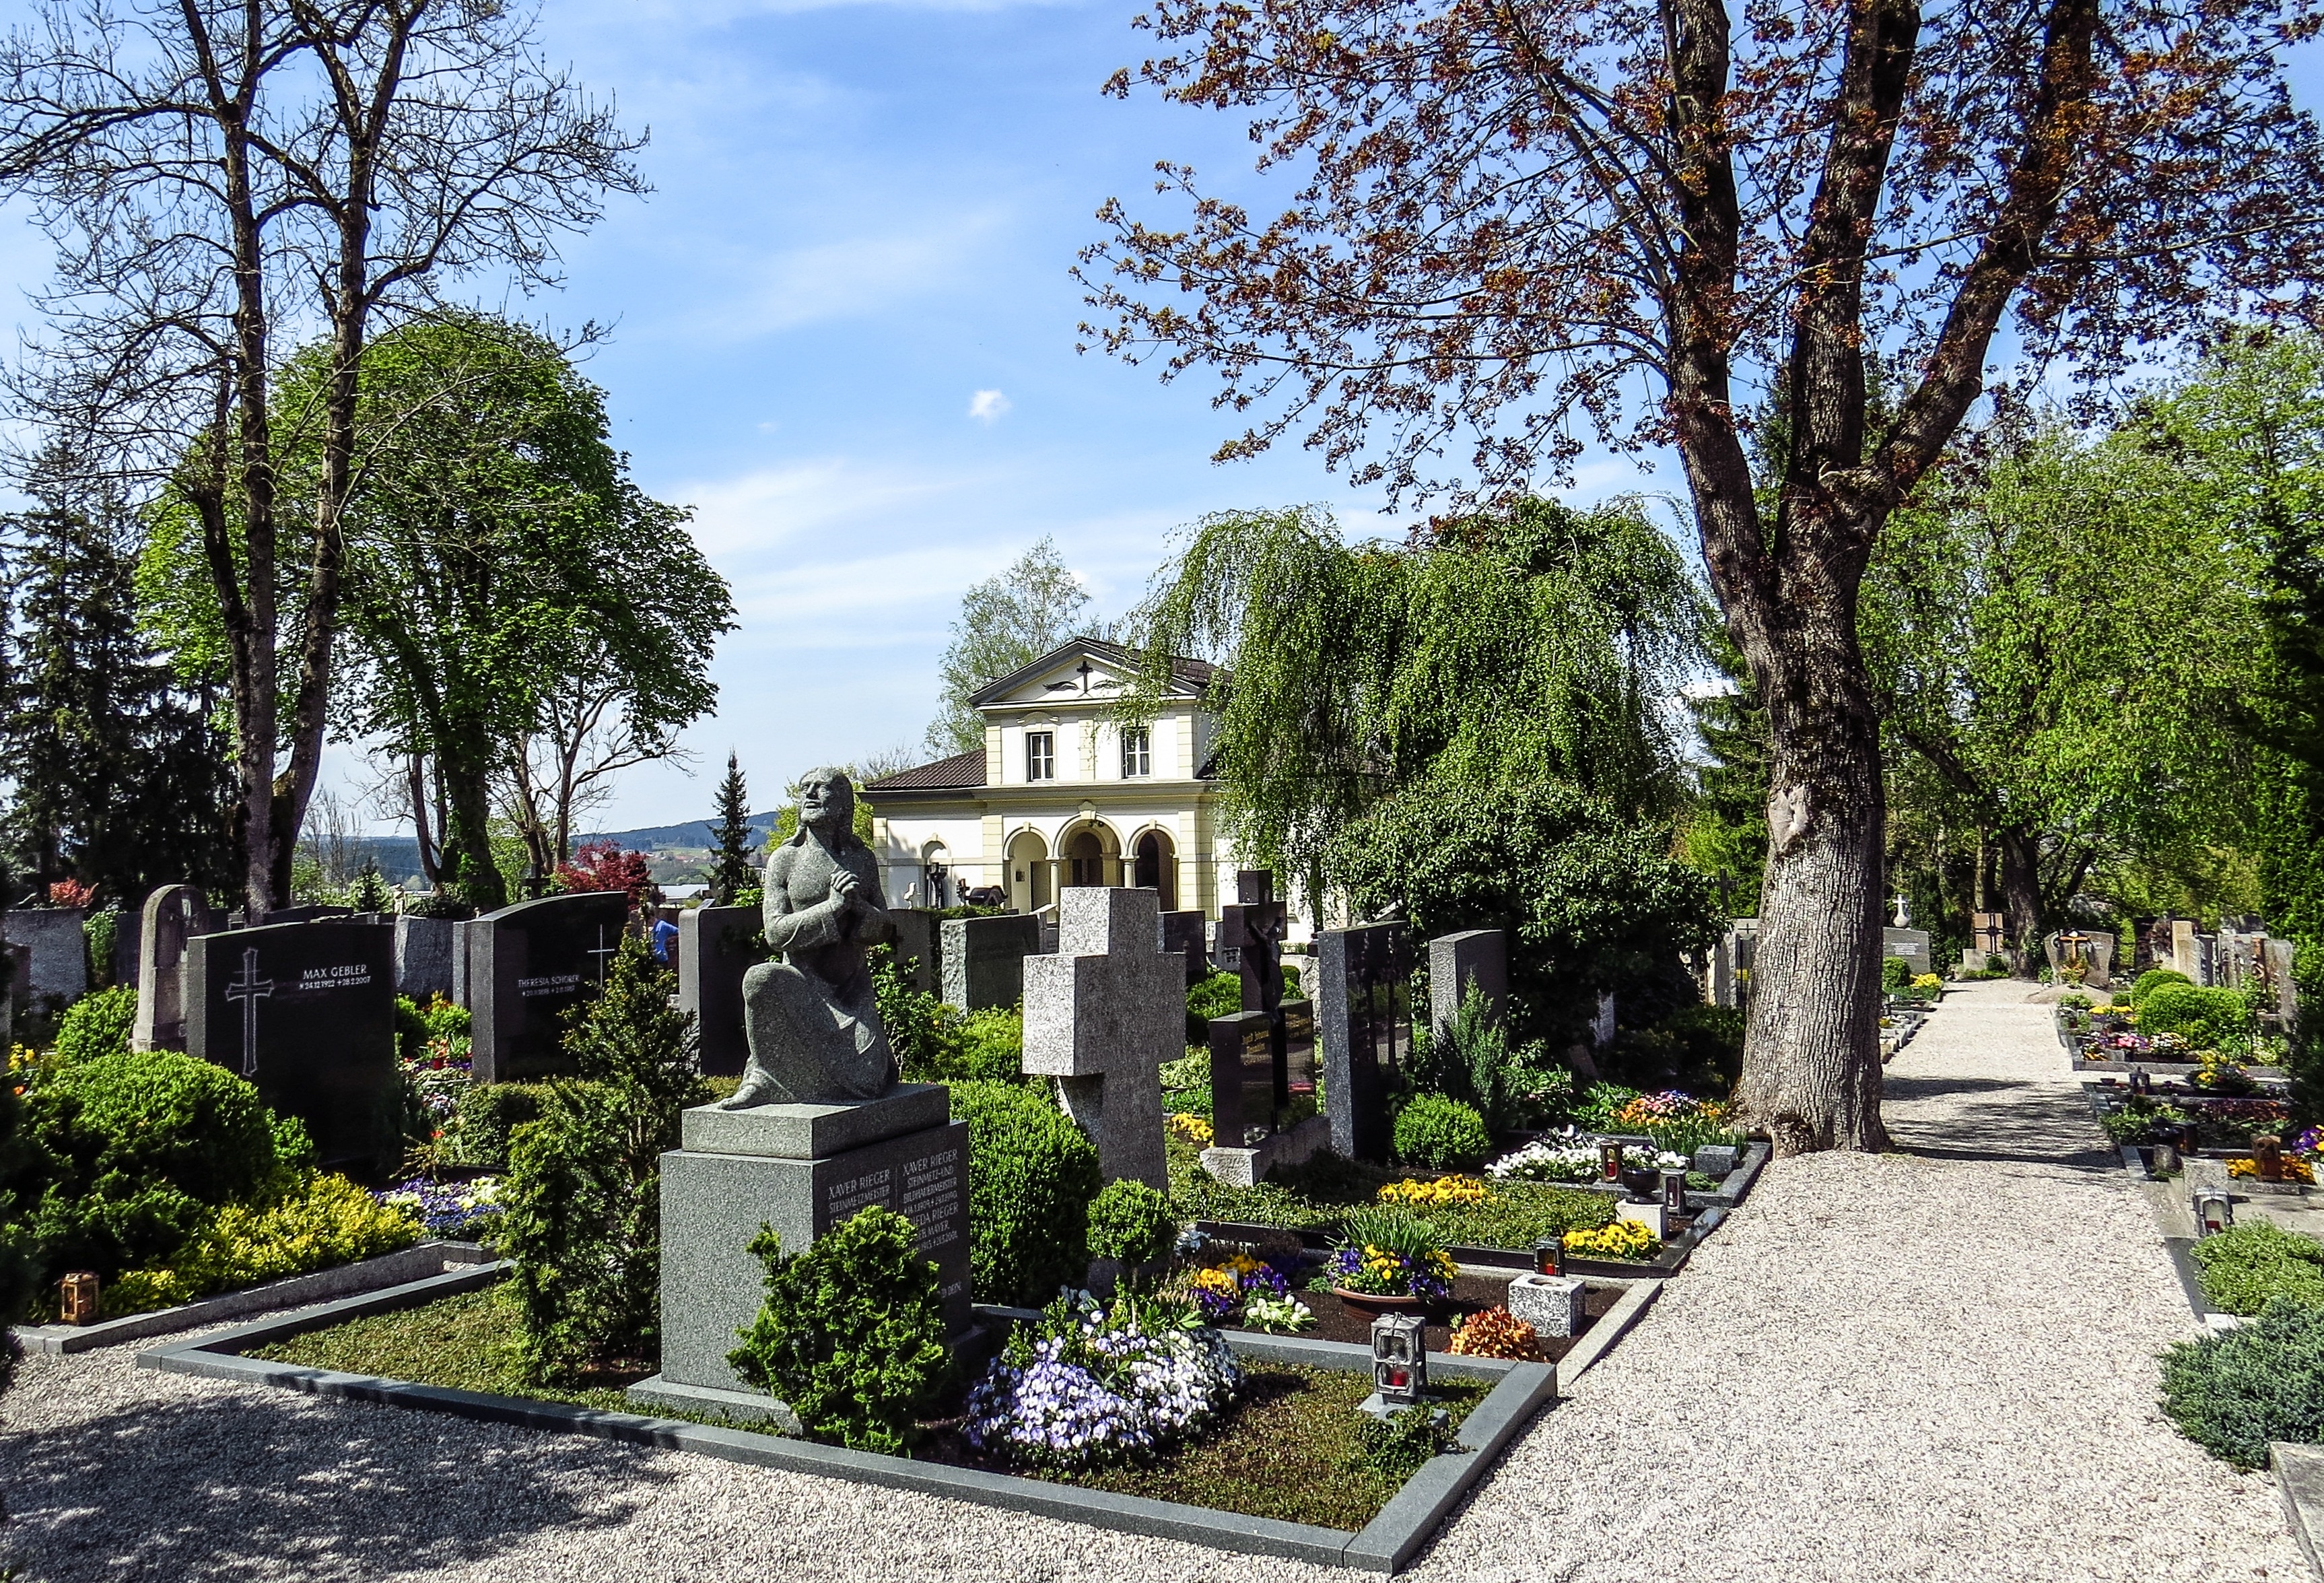 cemetery with gravestones